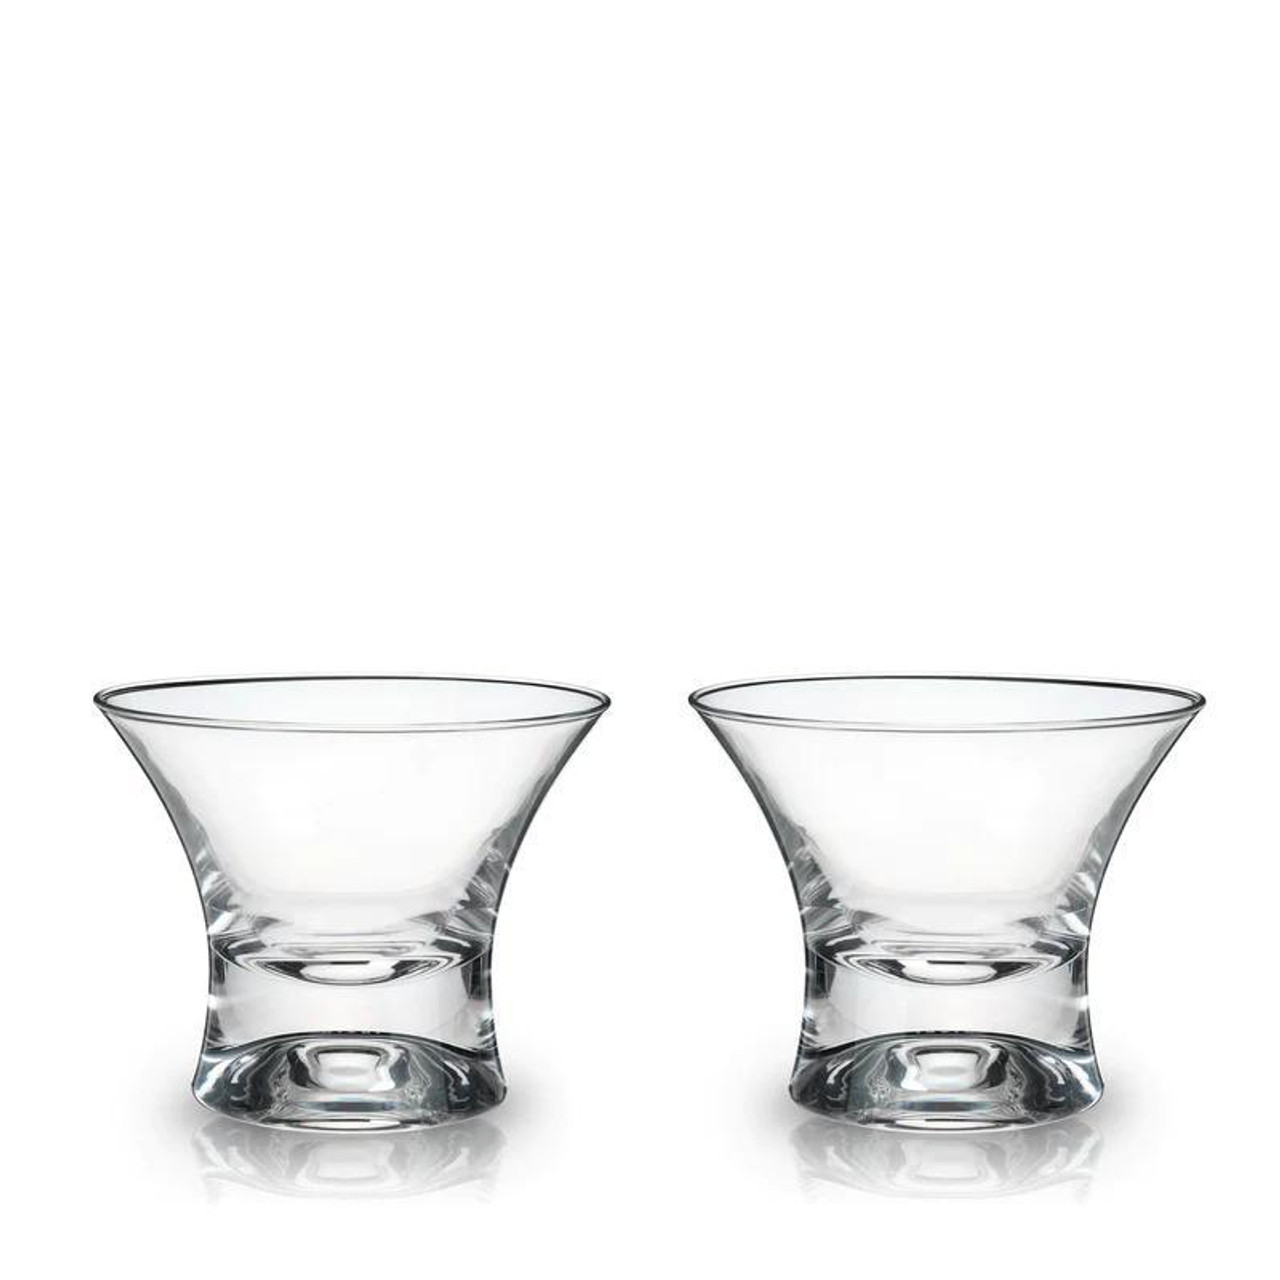 Viski Crystal Set of 2 Manhattan Glasses